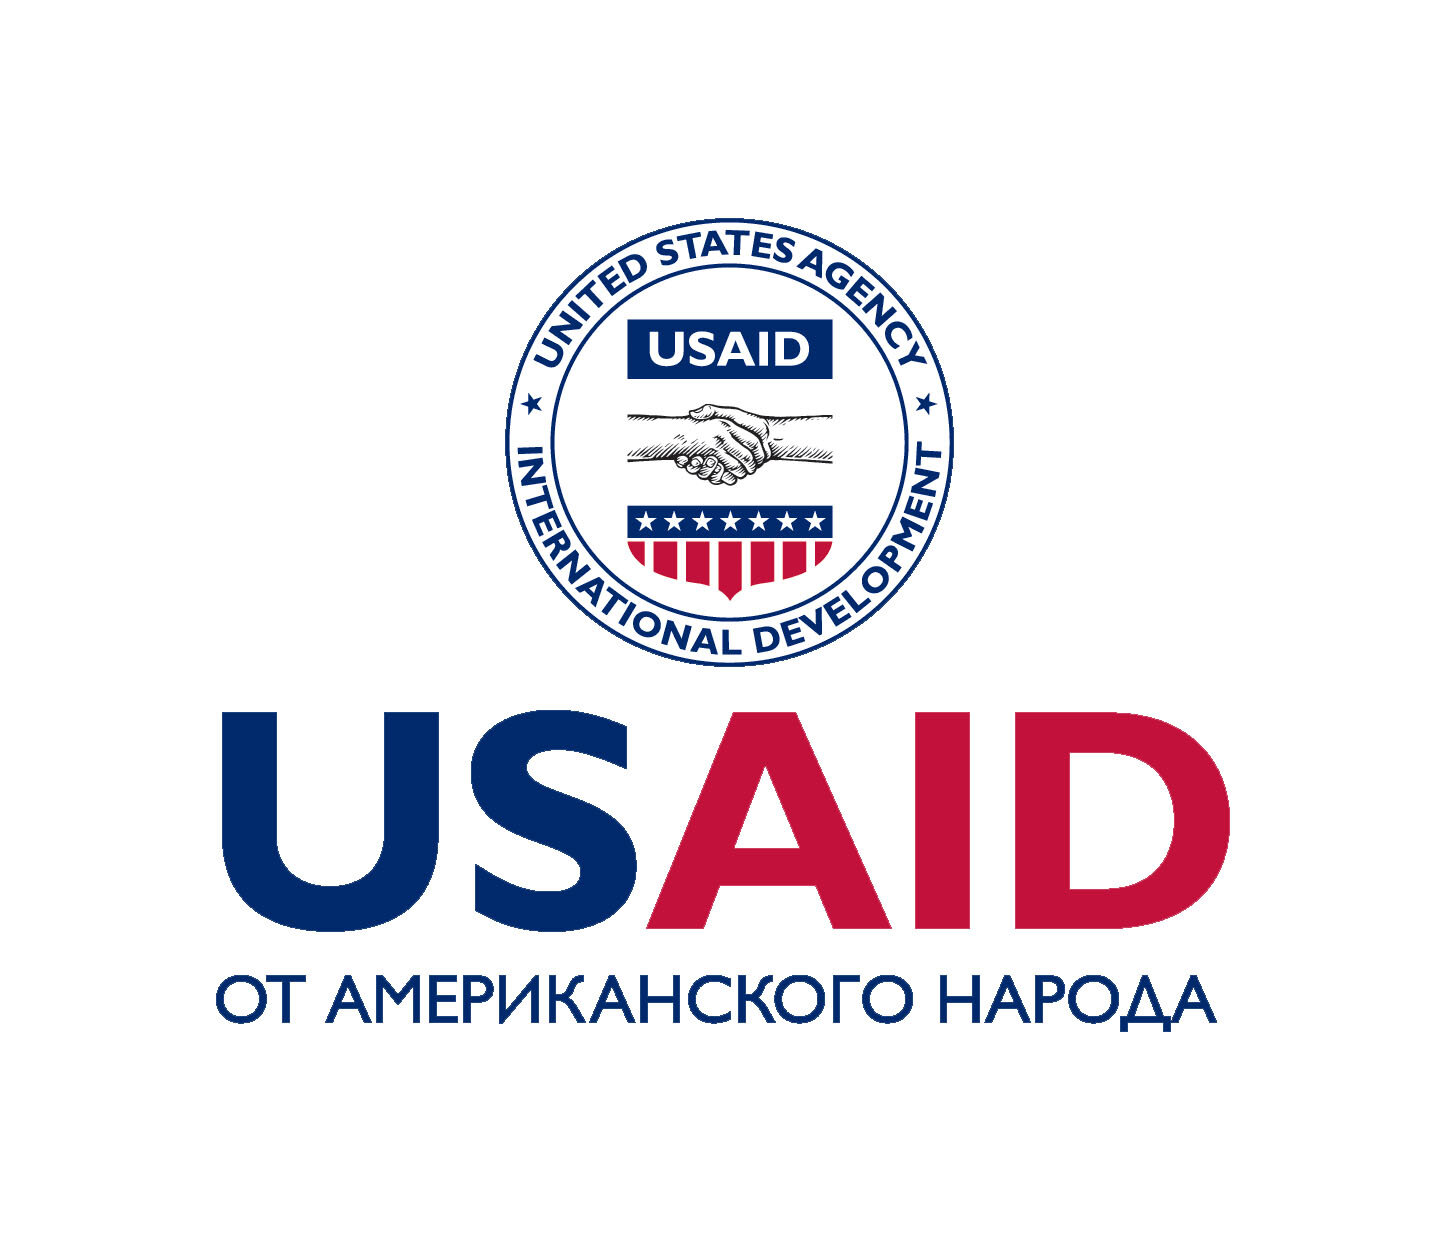 USAID.jpg